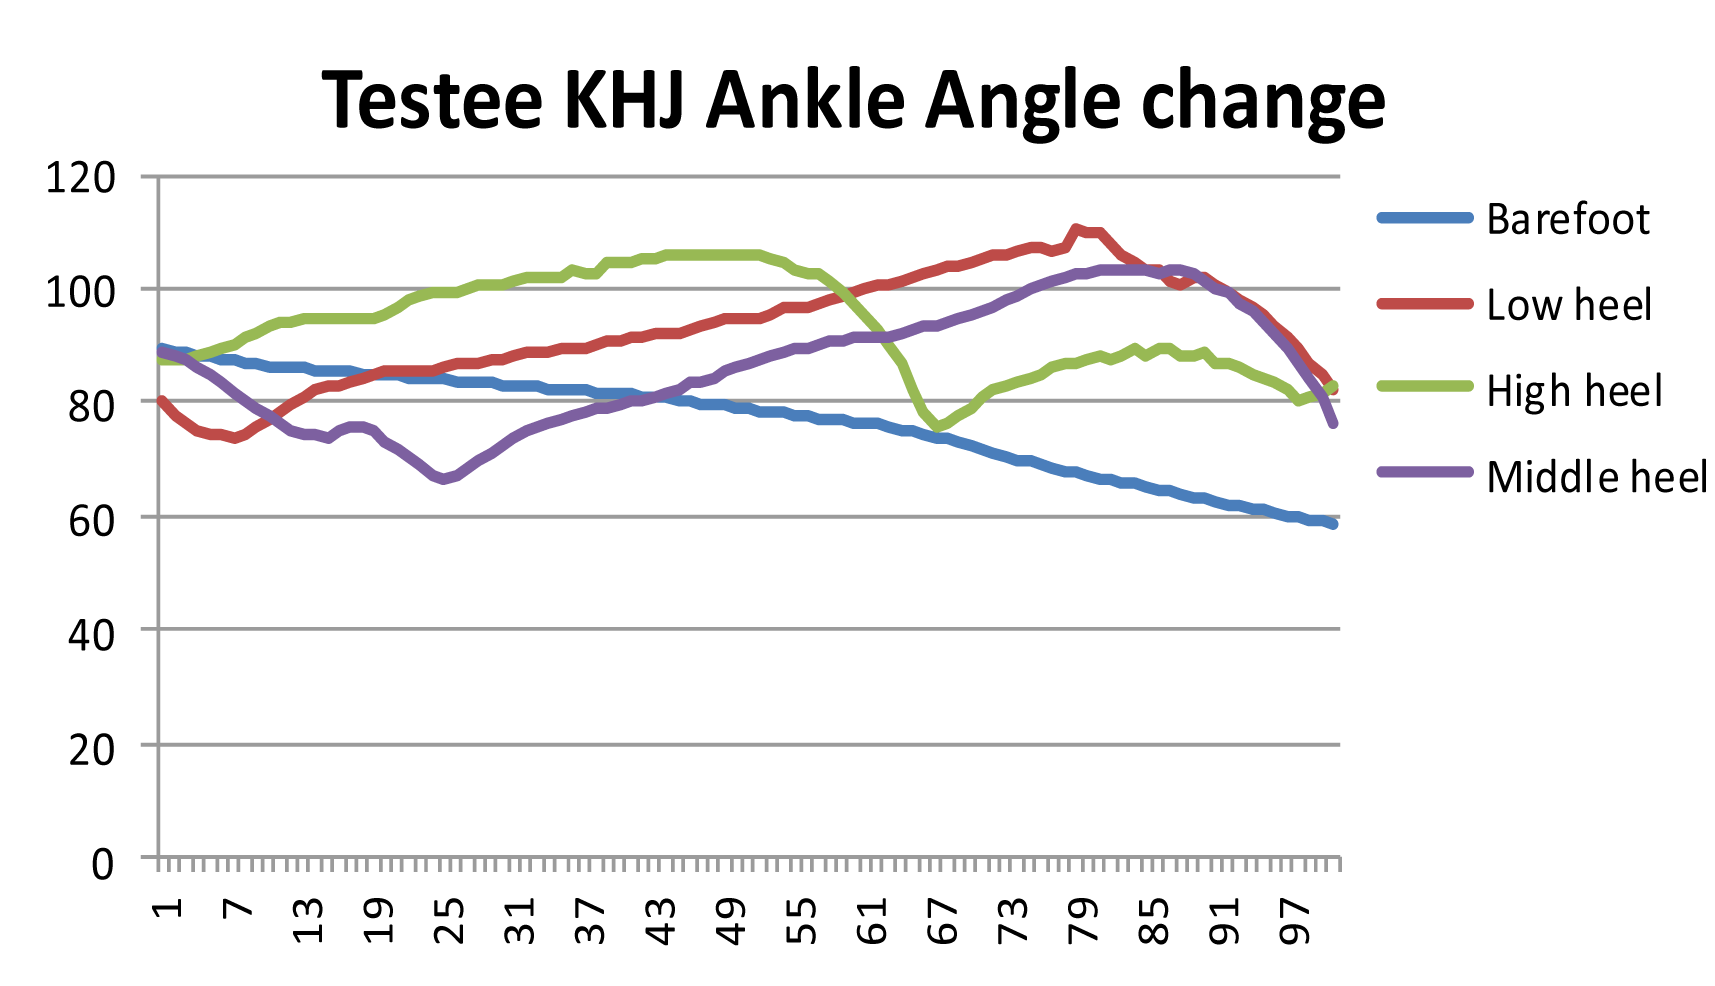 Testee KHJ - Ankle Angle change